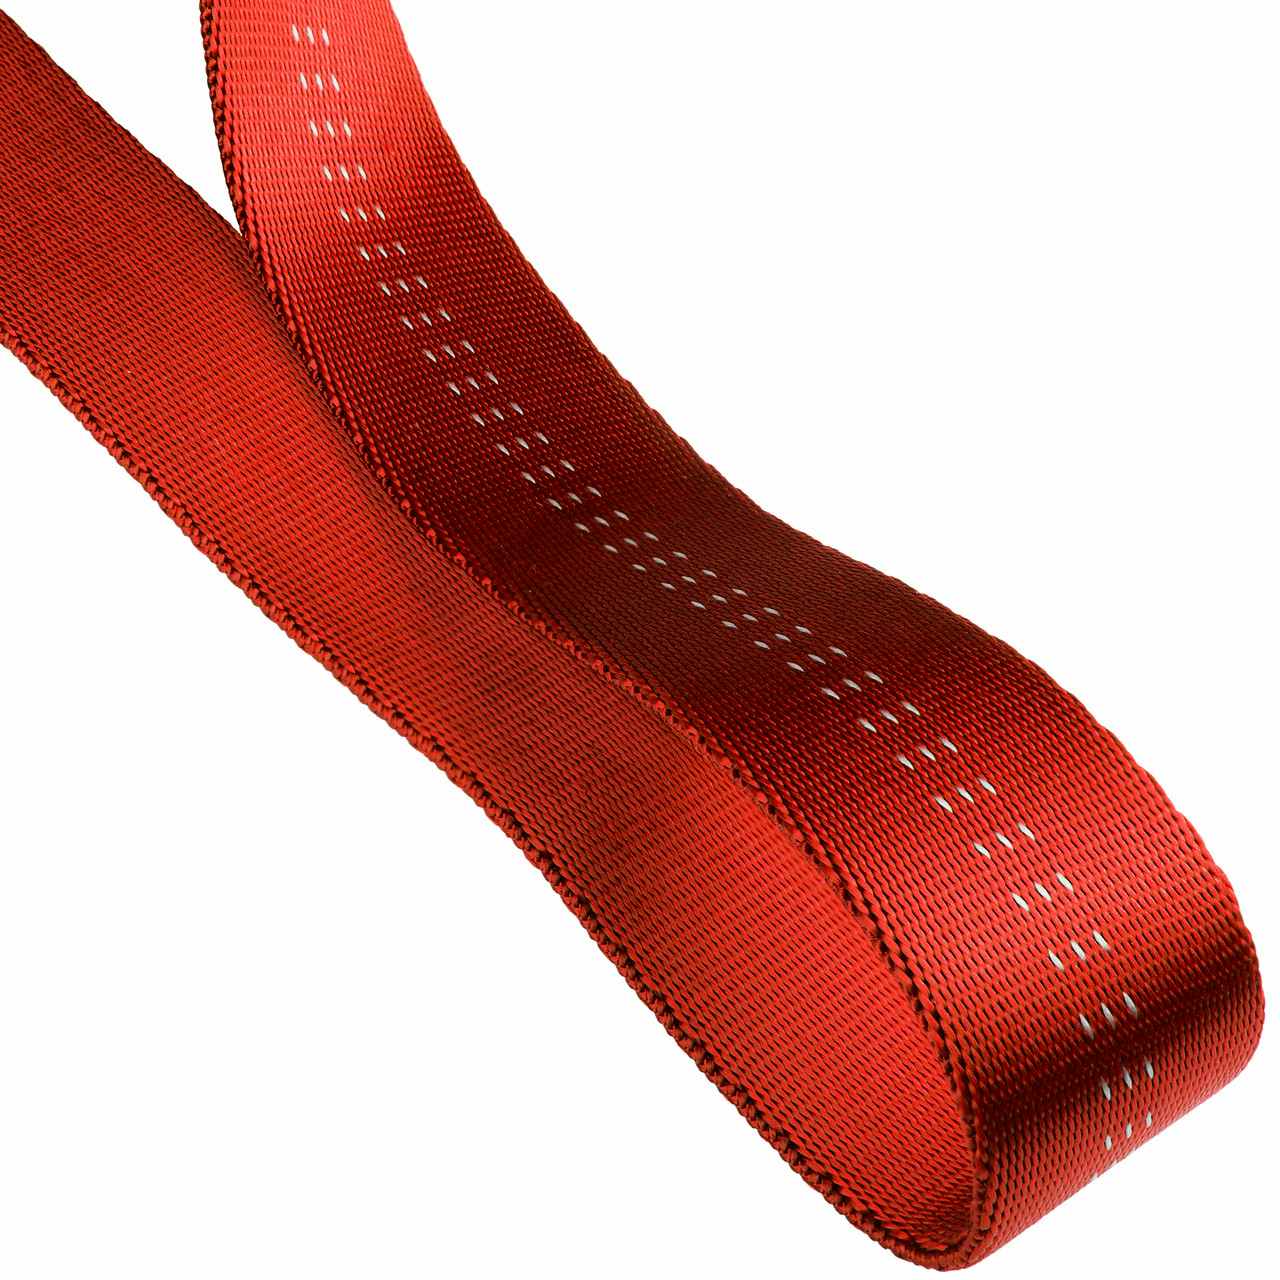 1"(25mm) Nylon Tubular Climbing Webbing Red